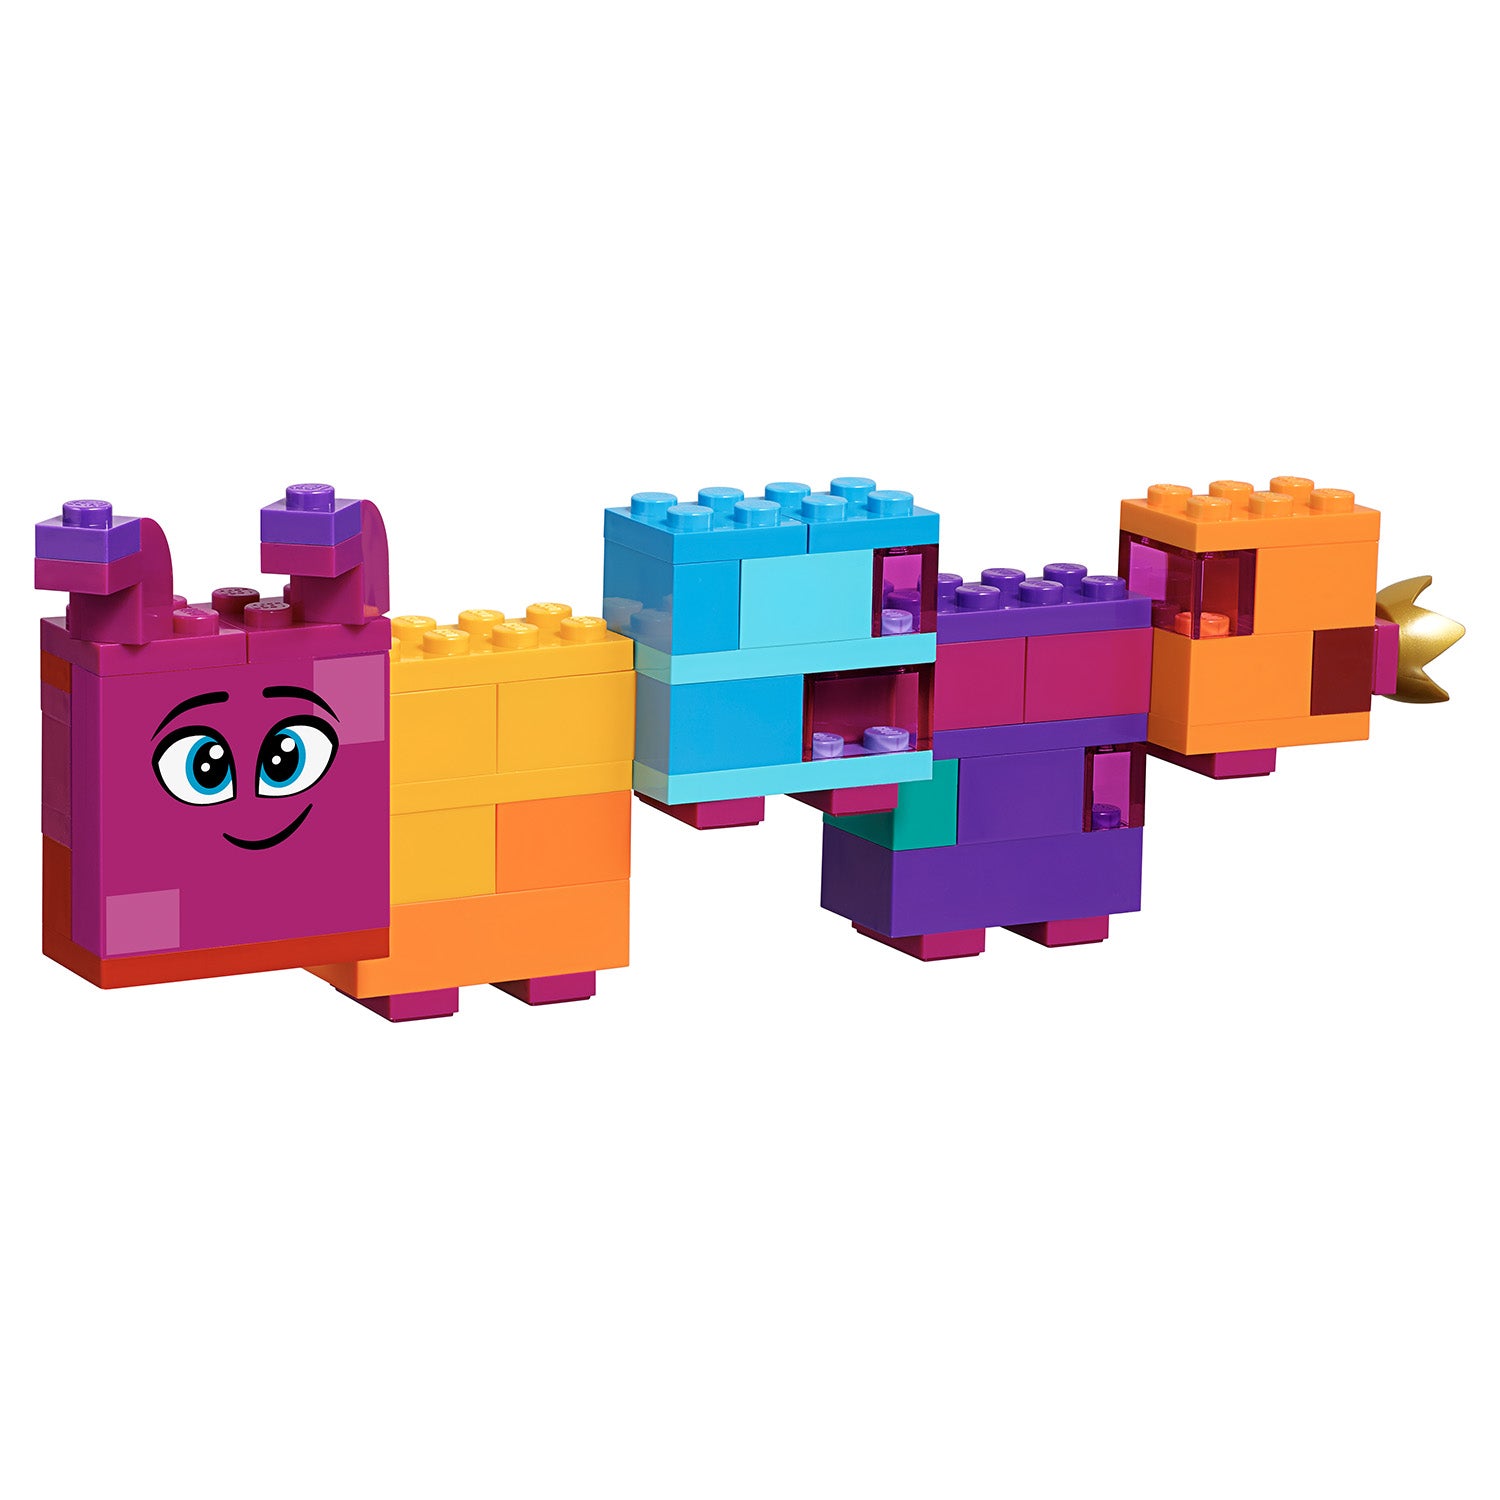 70825 LEGO® Movie - La scatola costruisci quello che vuoi - FUORI CATALOGO